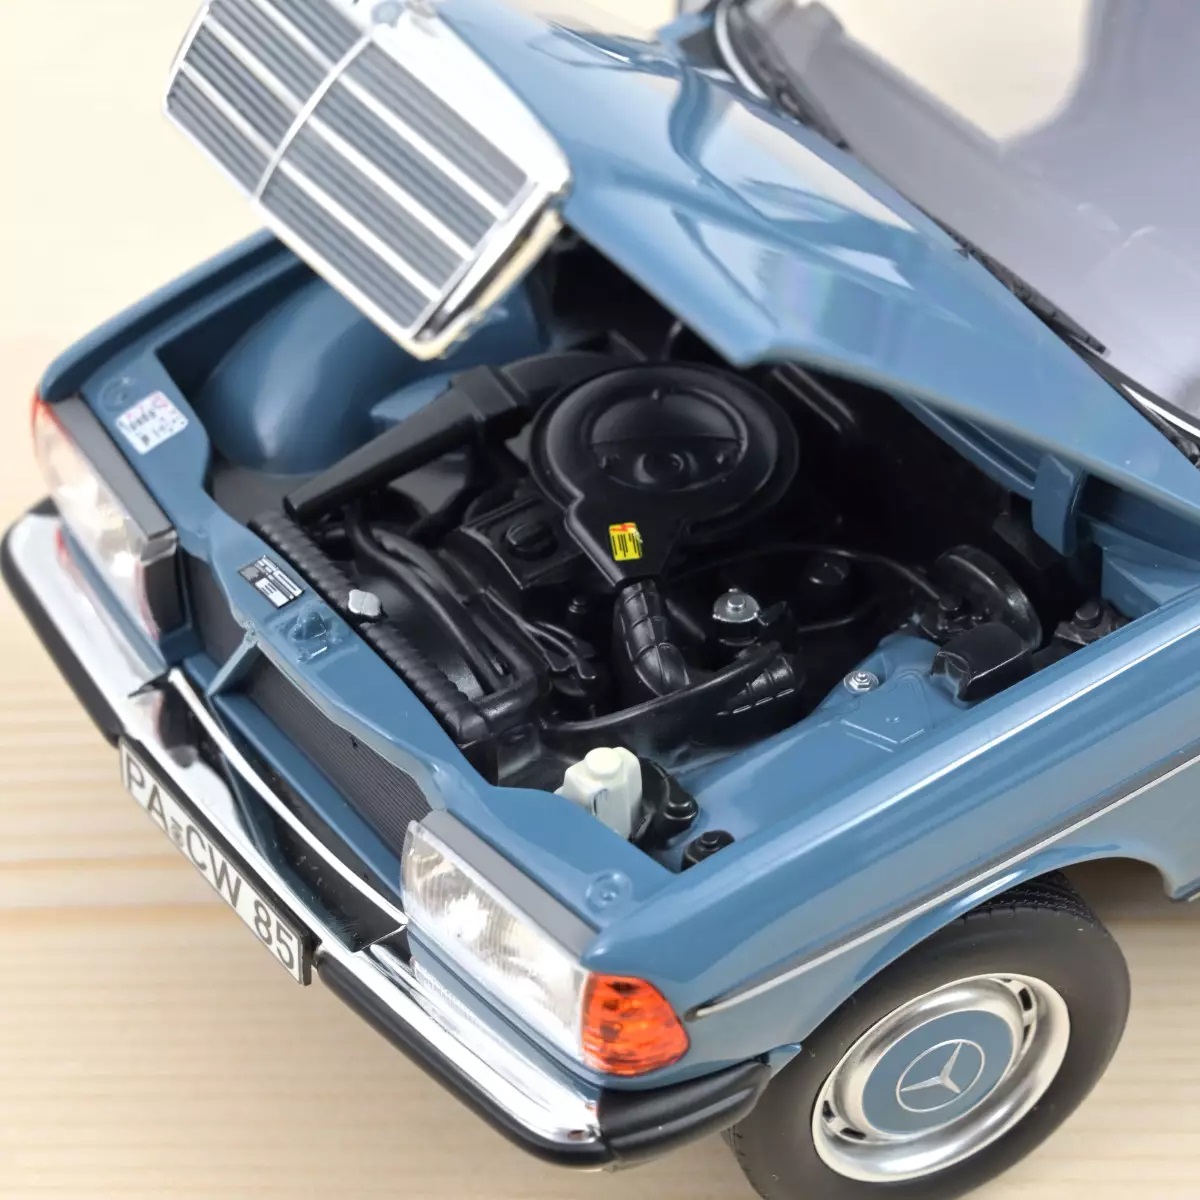 ノレブ 1/18 メルセデスベンツ MB 200 T 1980年 モデルカー / ブルー画像